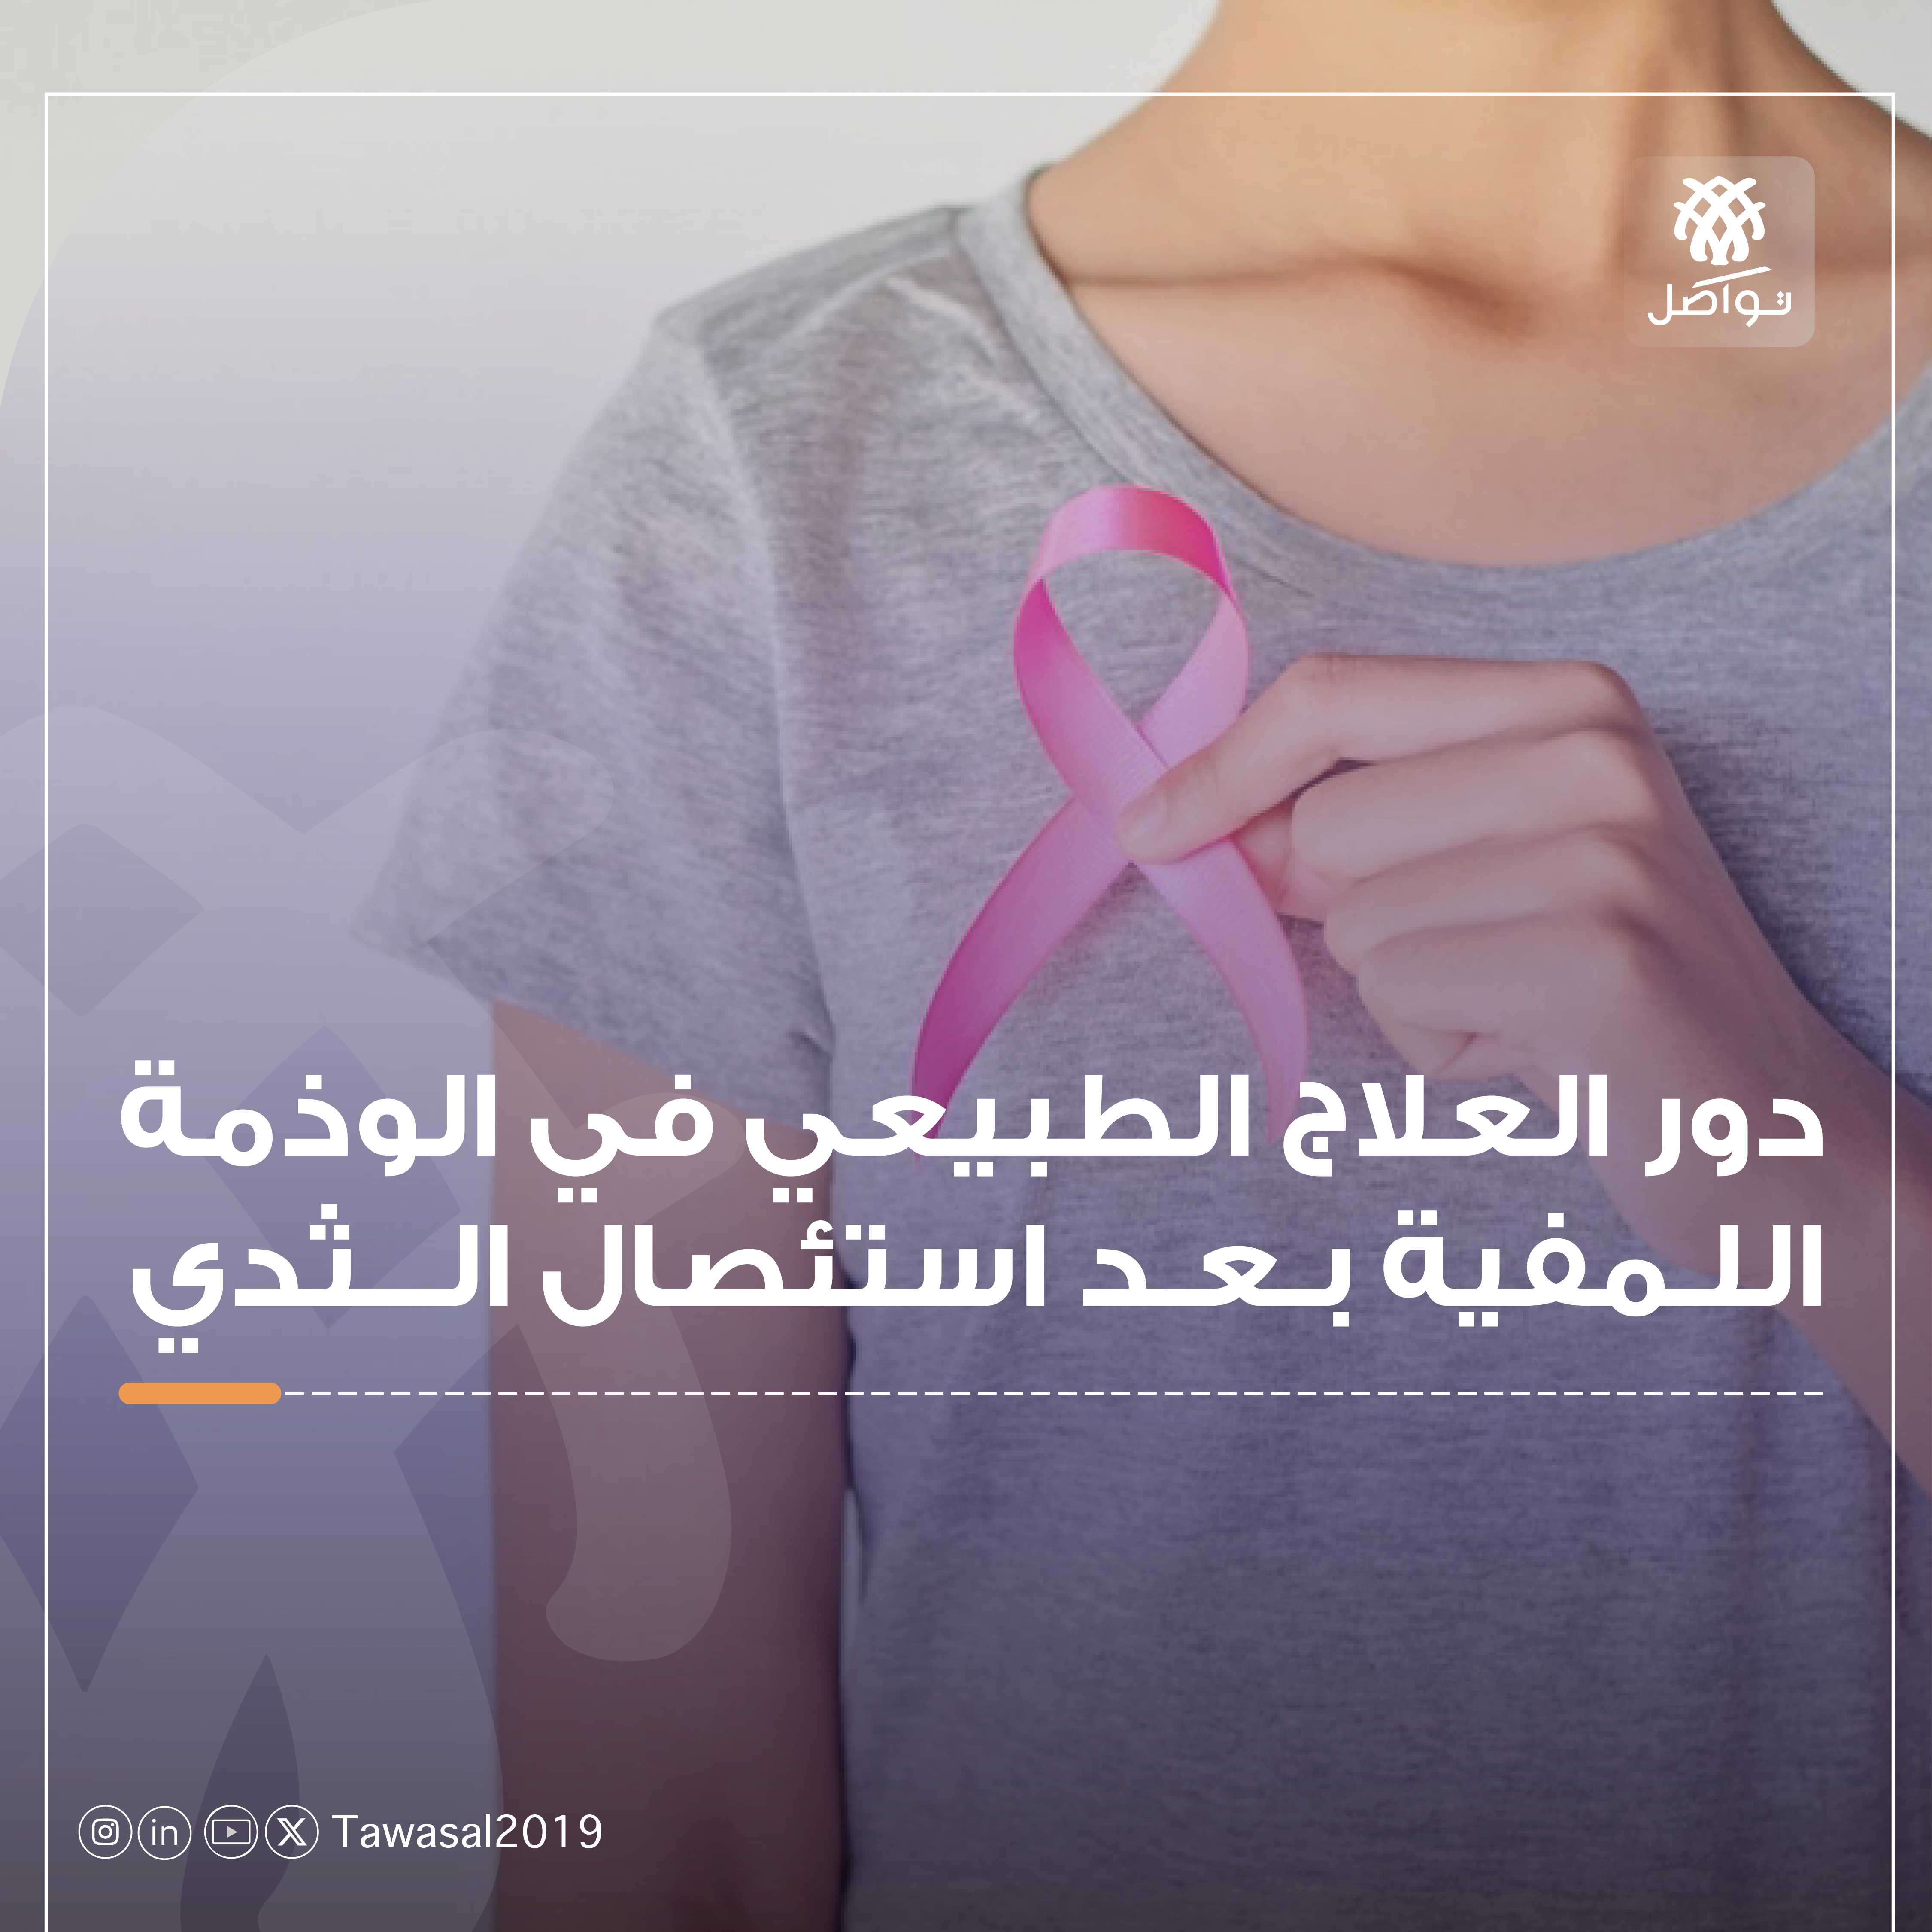 امرأة ممسكة بشريطة وردية (شعار سرطان الثدي)